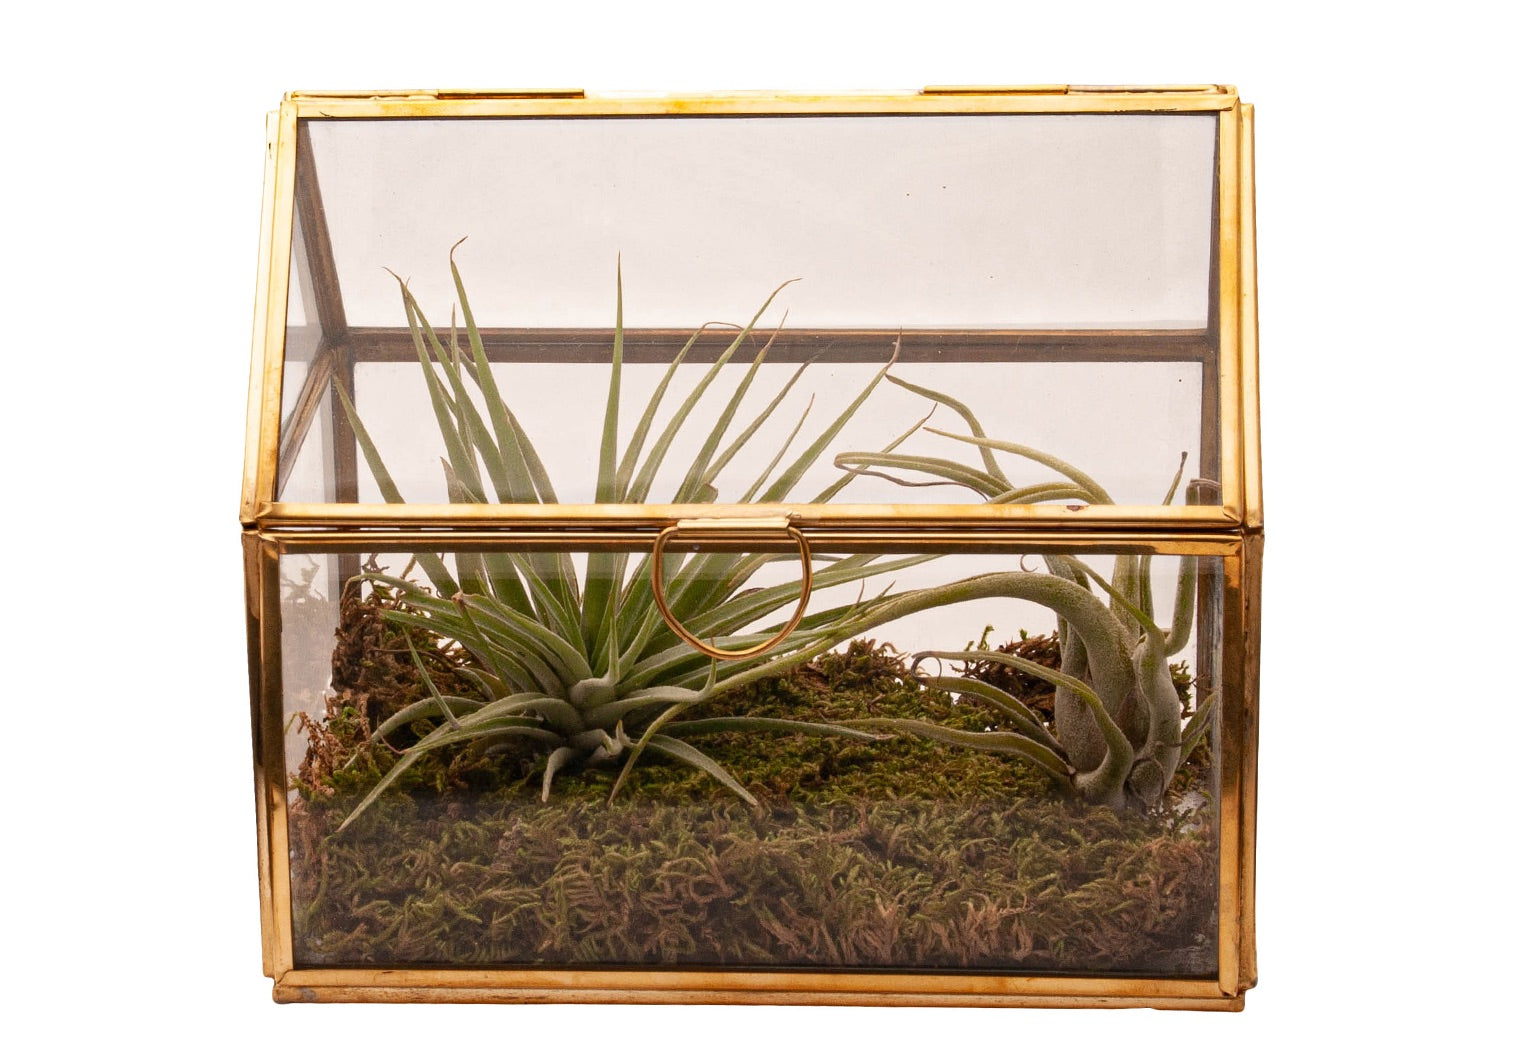 glas terrarium met 2 tillandsia plantjes en afgewerkt met plaatmos. Terrarium is van glas en opgebouwd met goudkleurig metaal